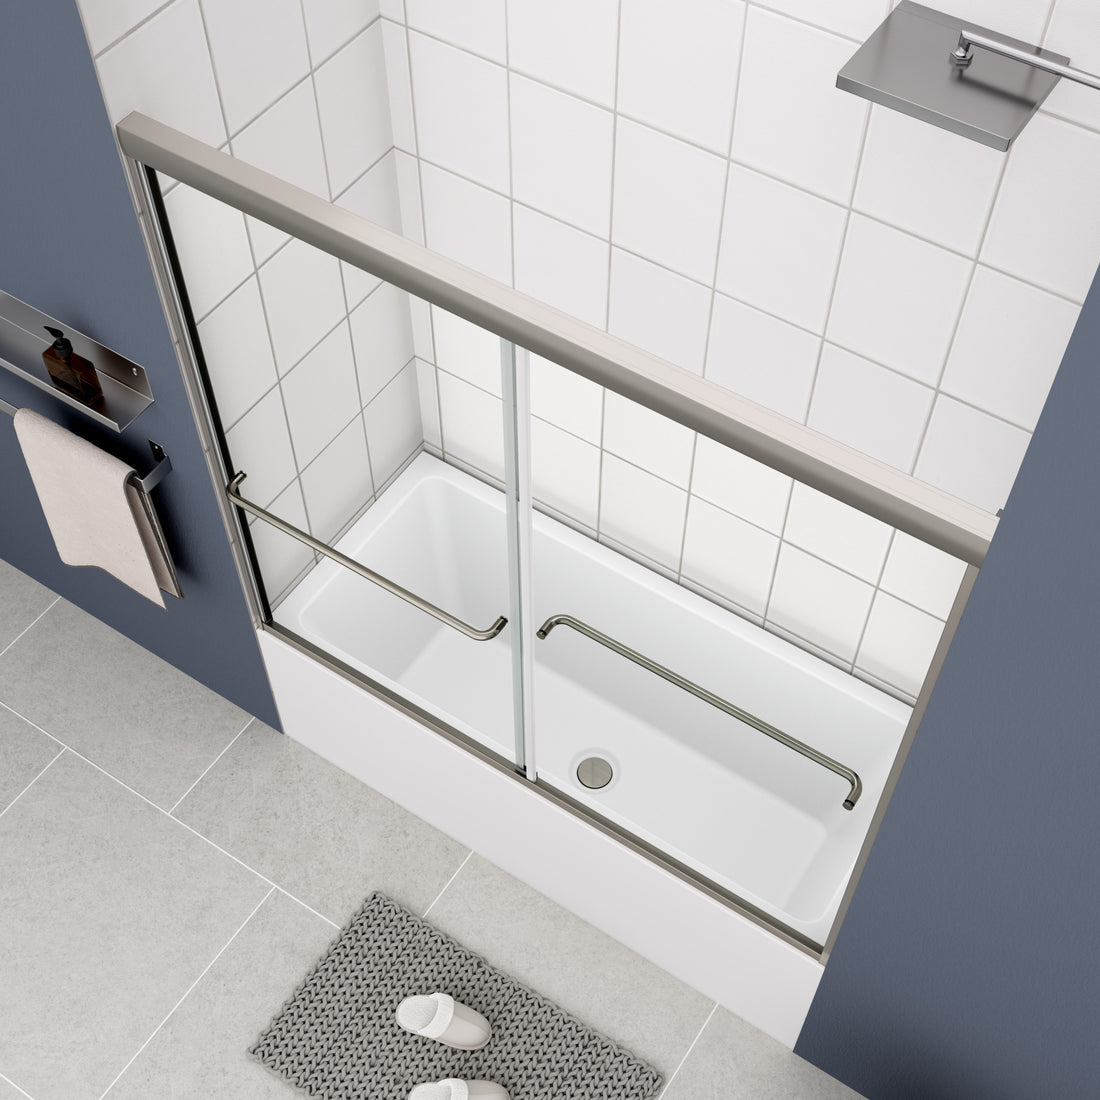 Bathtub Bypass Shower Door, Sliding Door, With 1